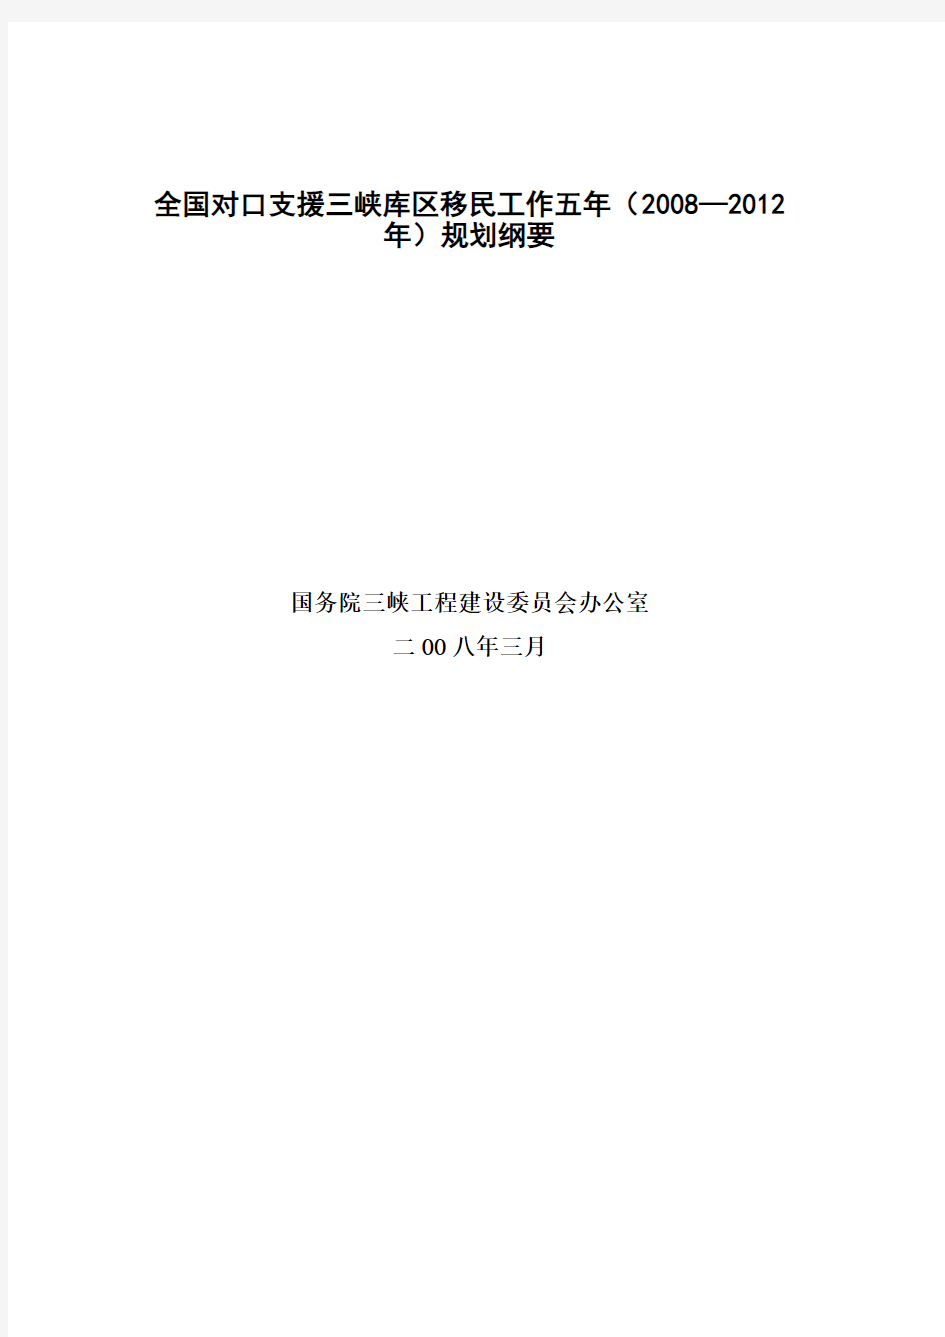 全国对口支援三峡库区移民工作五年(2008—2012年)规划纲要